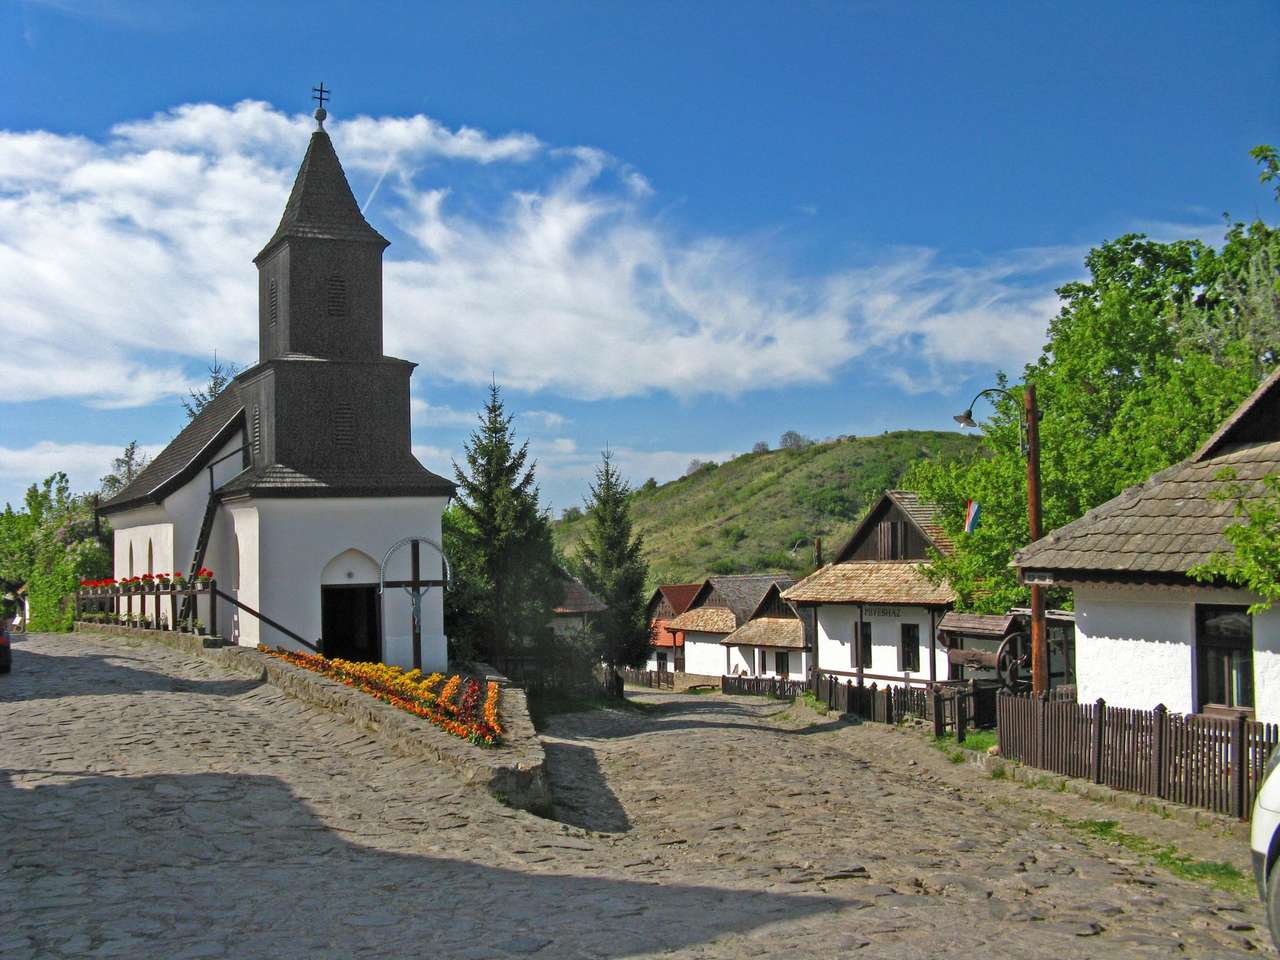 Музейне село Холлокьо в Угорщині онлайн пазл